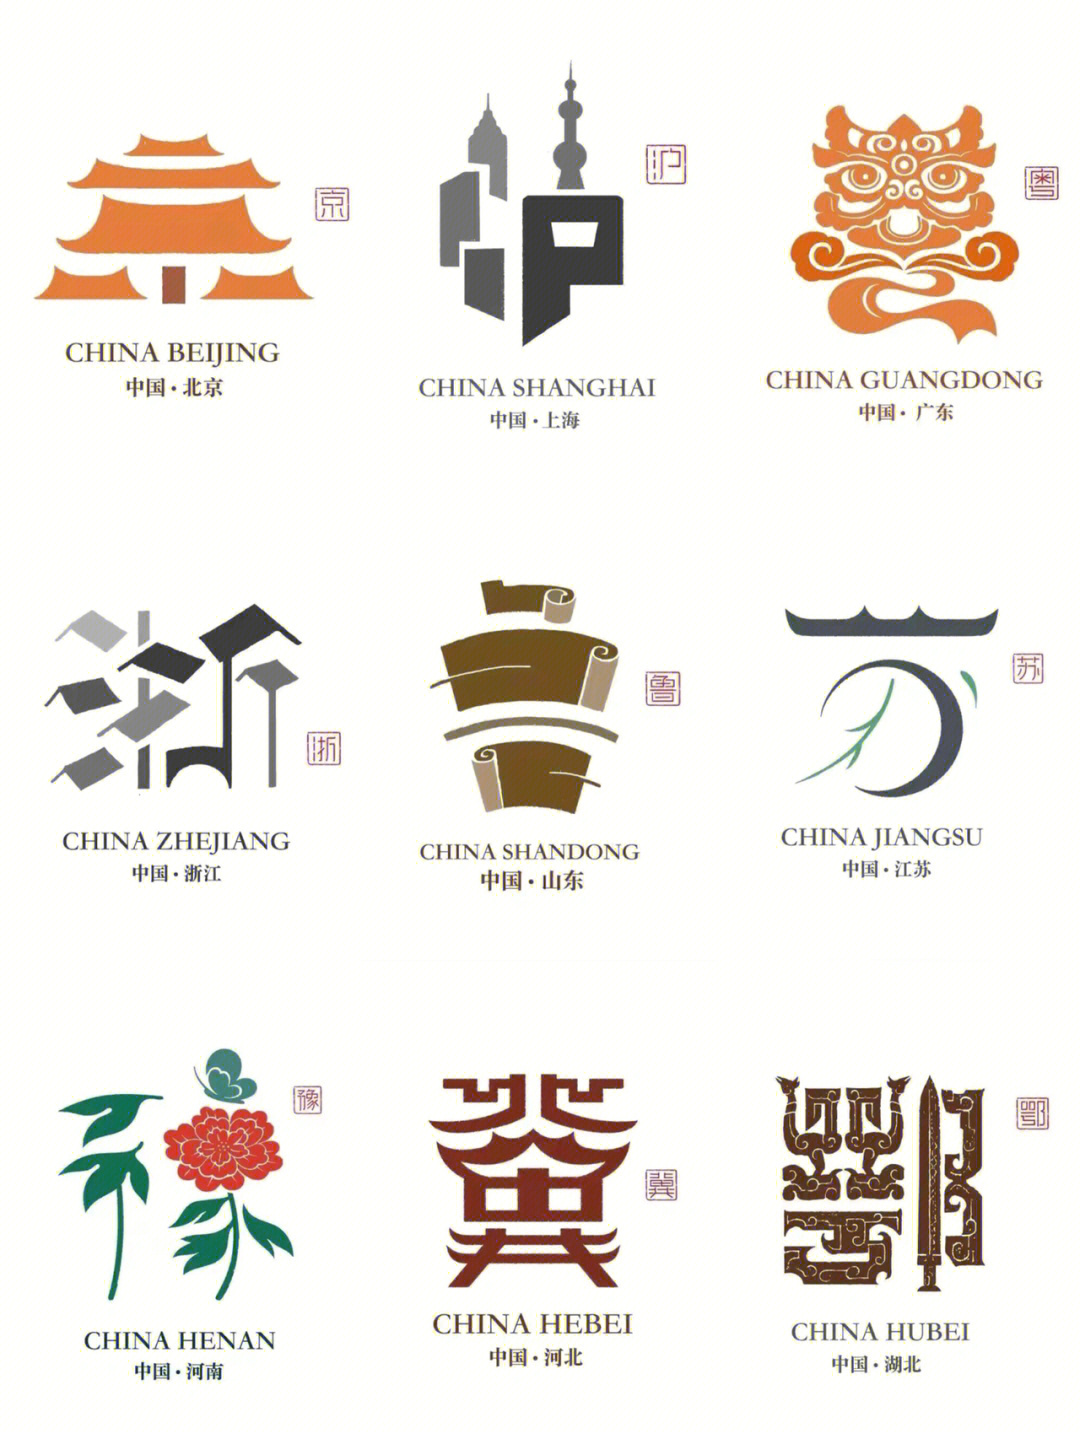 师石昌鸿,他独特的字形设计,浓郁的中国元素重新定义了中国城市名片